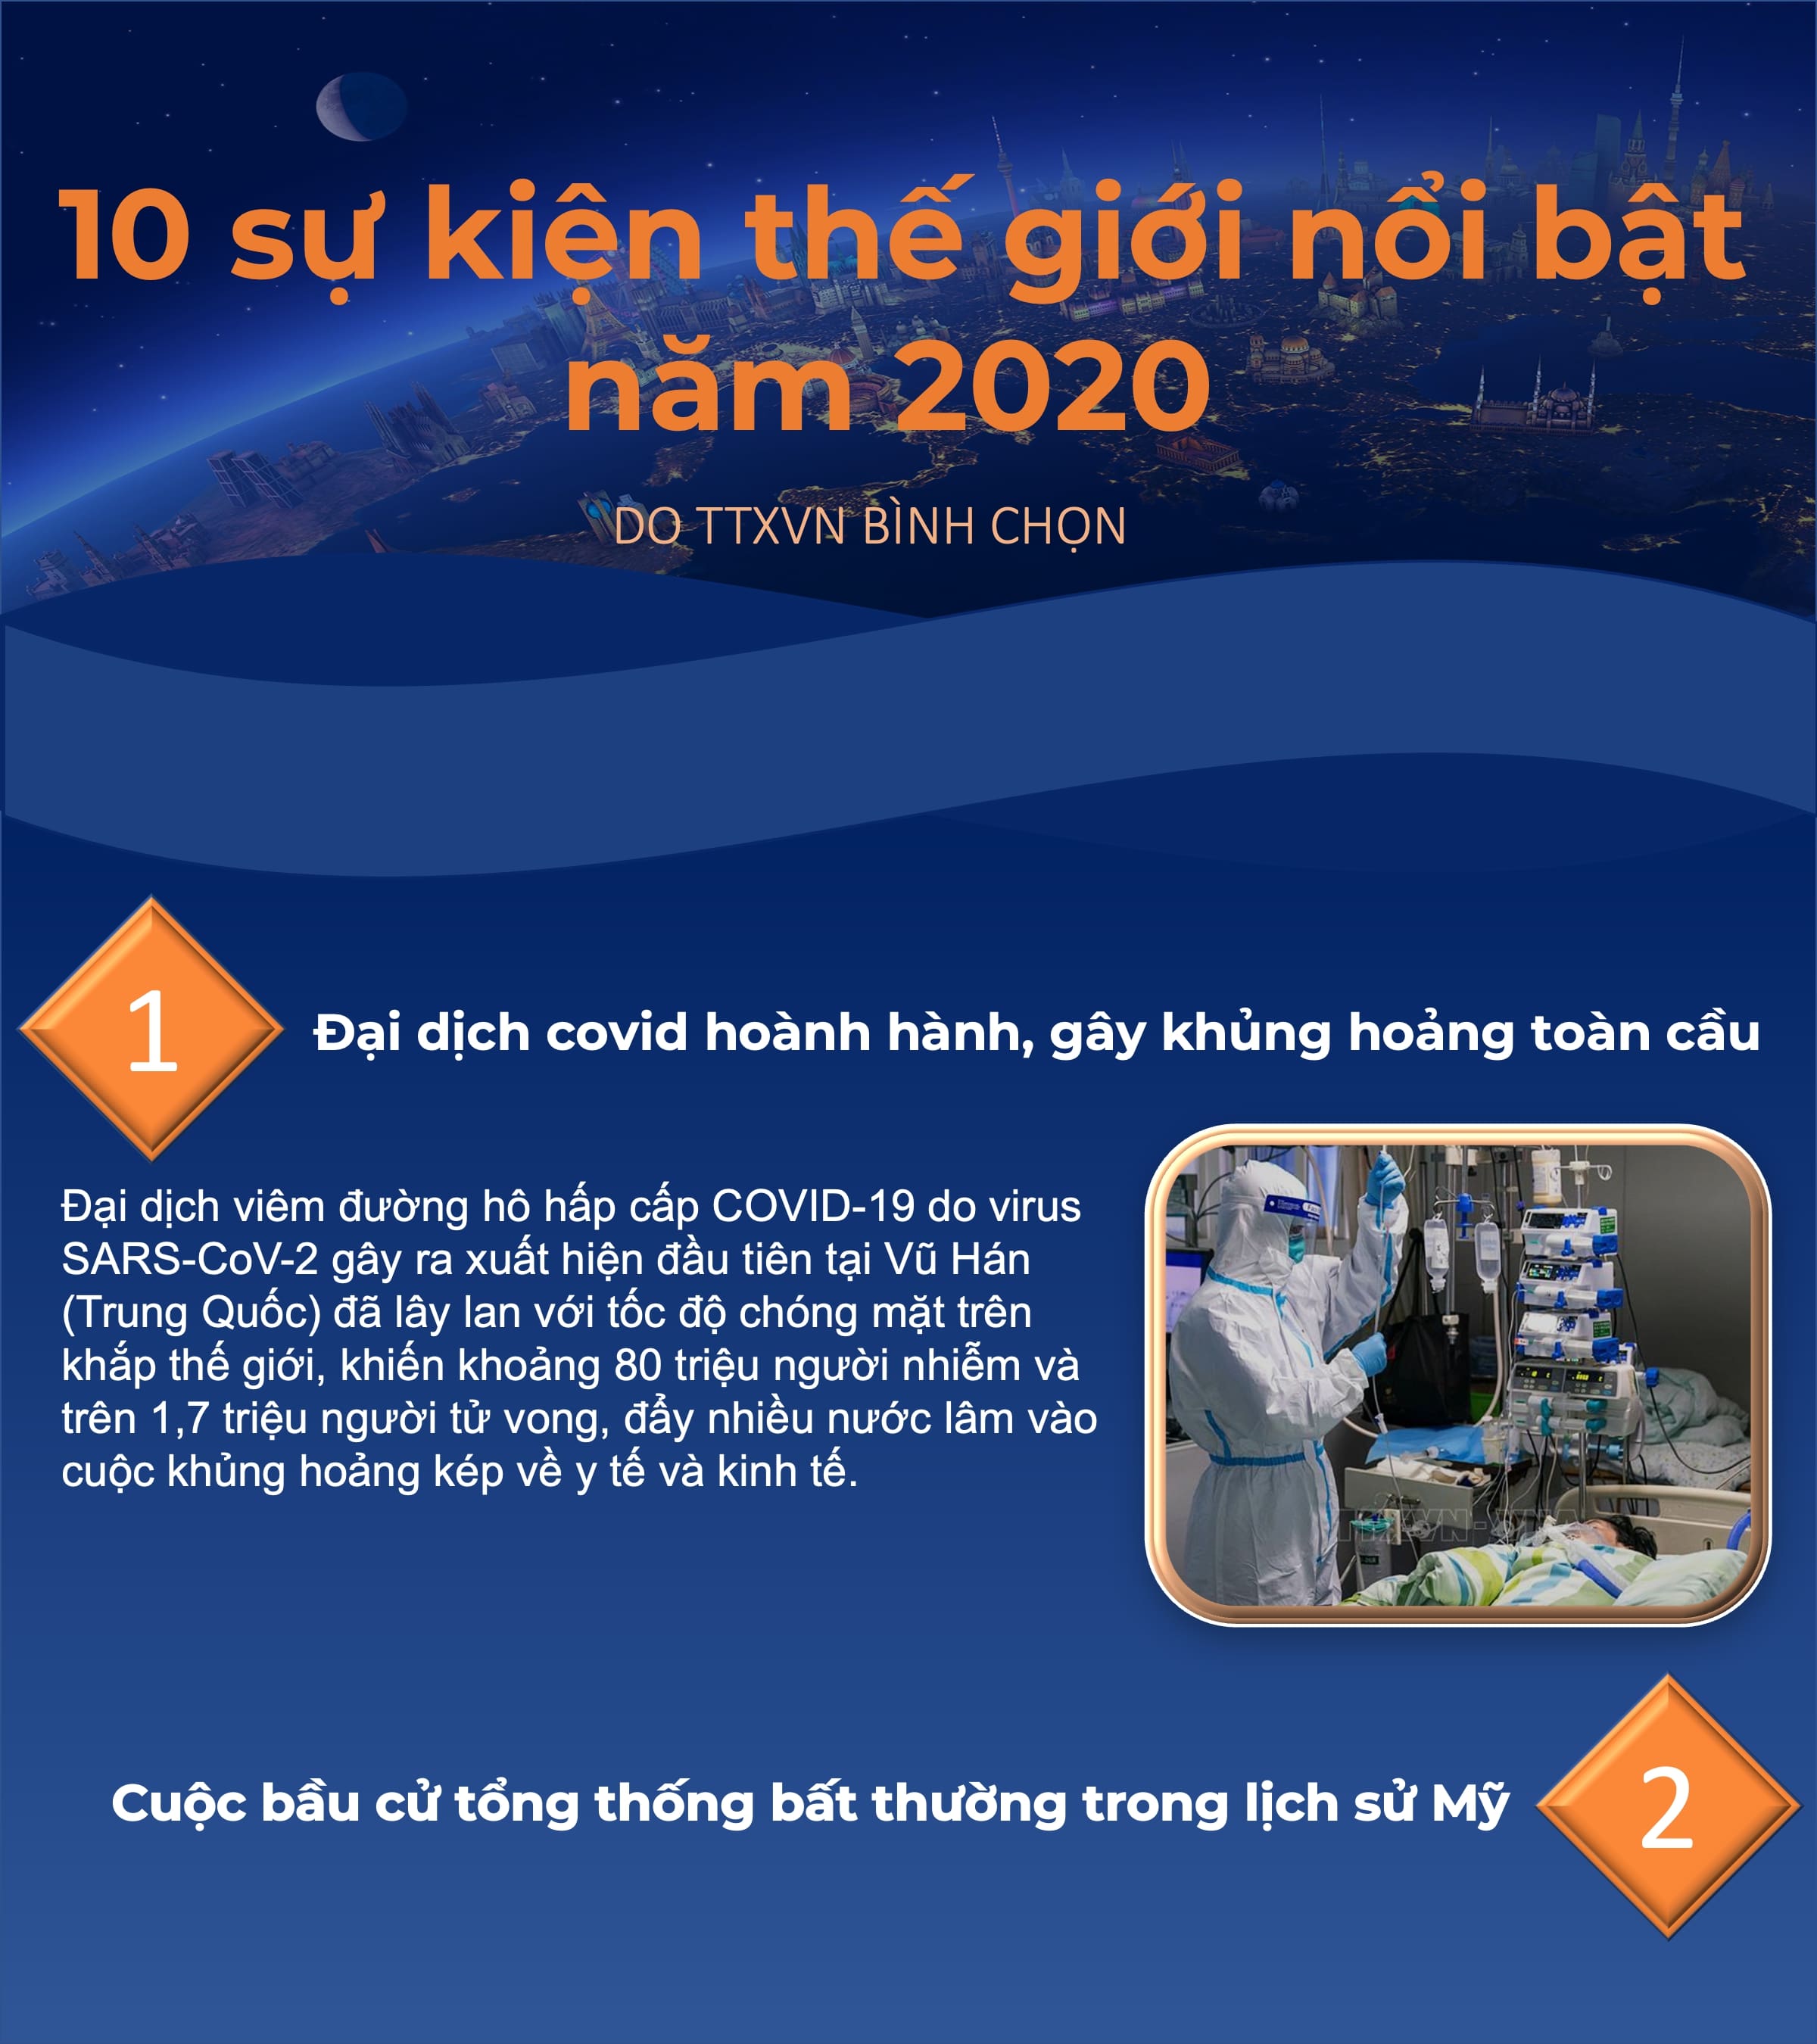 10 sự kiện thế giới nổi bật năm 2020 do TTXVN bình chọn -0